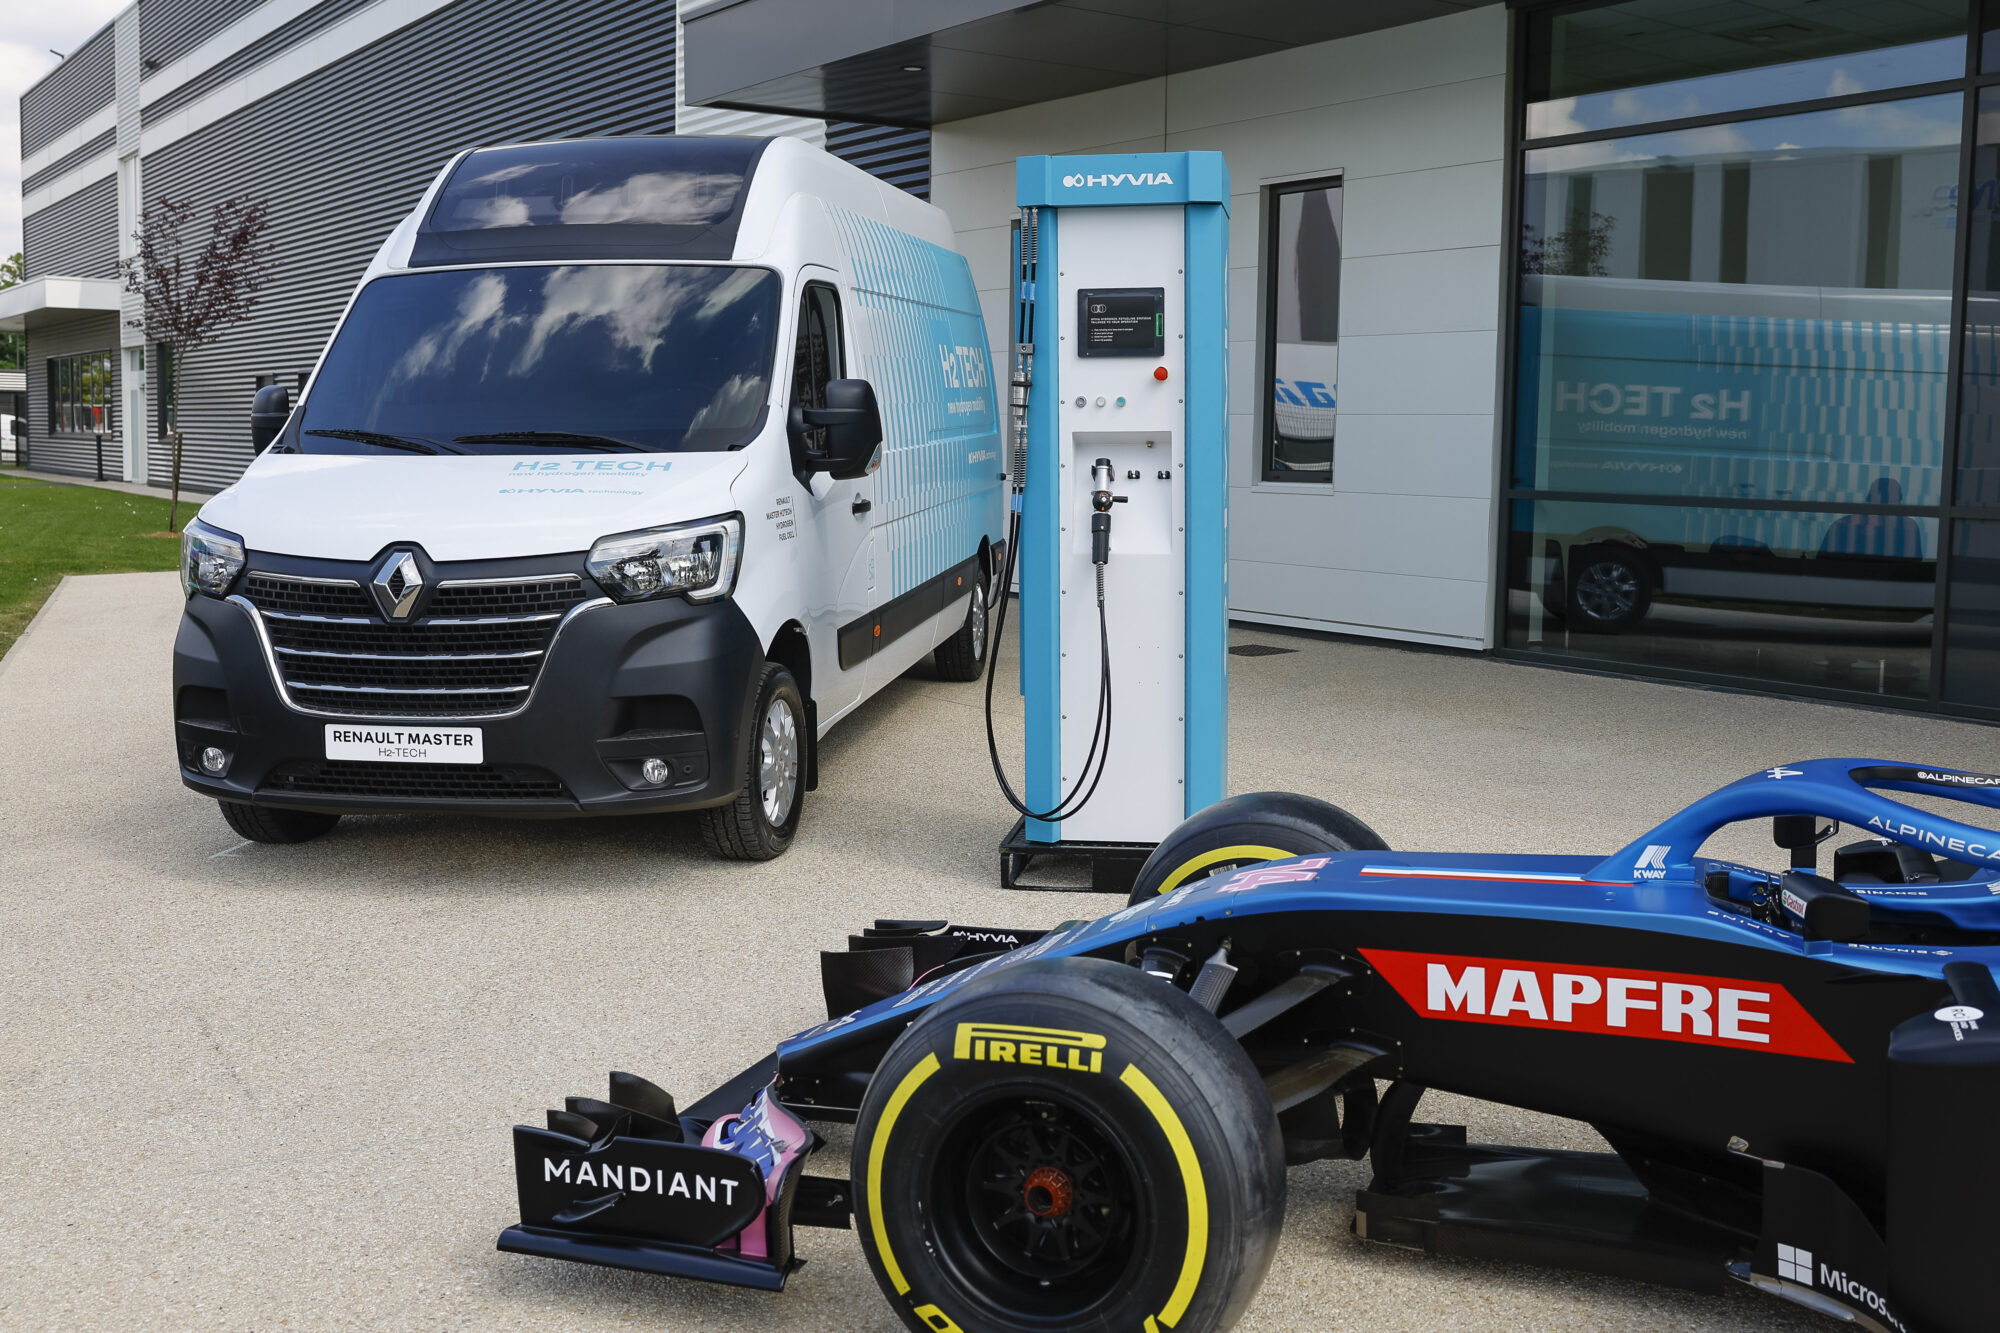 2022 - HYVIA, partenaire officiel de BWT Alpine F1 Team et du Forum Smart #038; Sustainable Mobility du Grand Prix de France de Formule 1 (2)